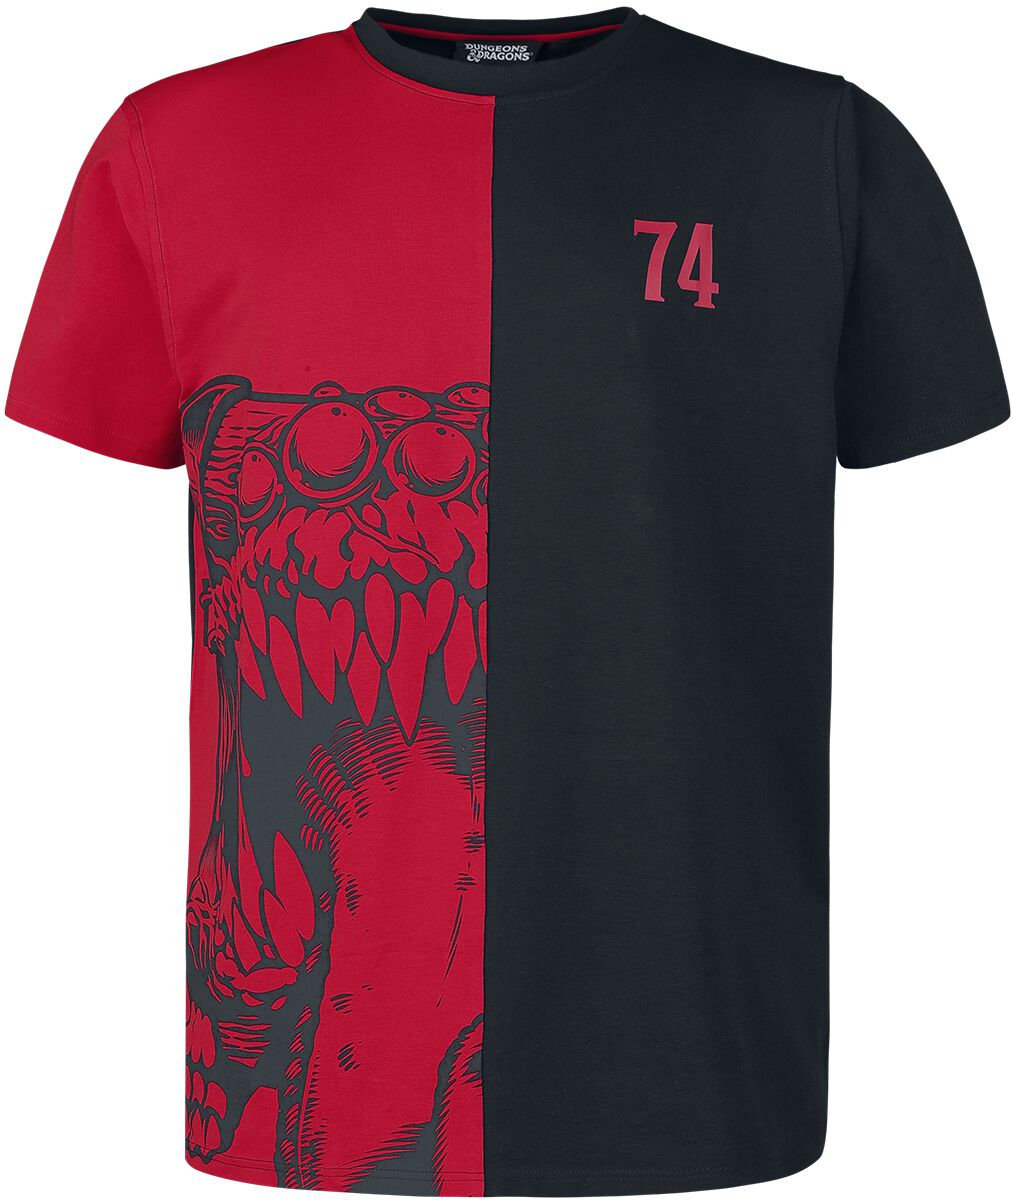 Dungeons and Dragons - Gaming T-Shirt - Mimic - S bis M - für Männer - Größe S - schwarz/rot  - EMP exklusives Merchandise!